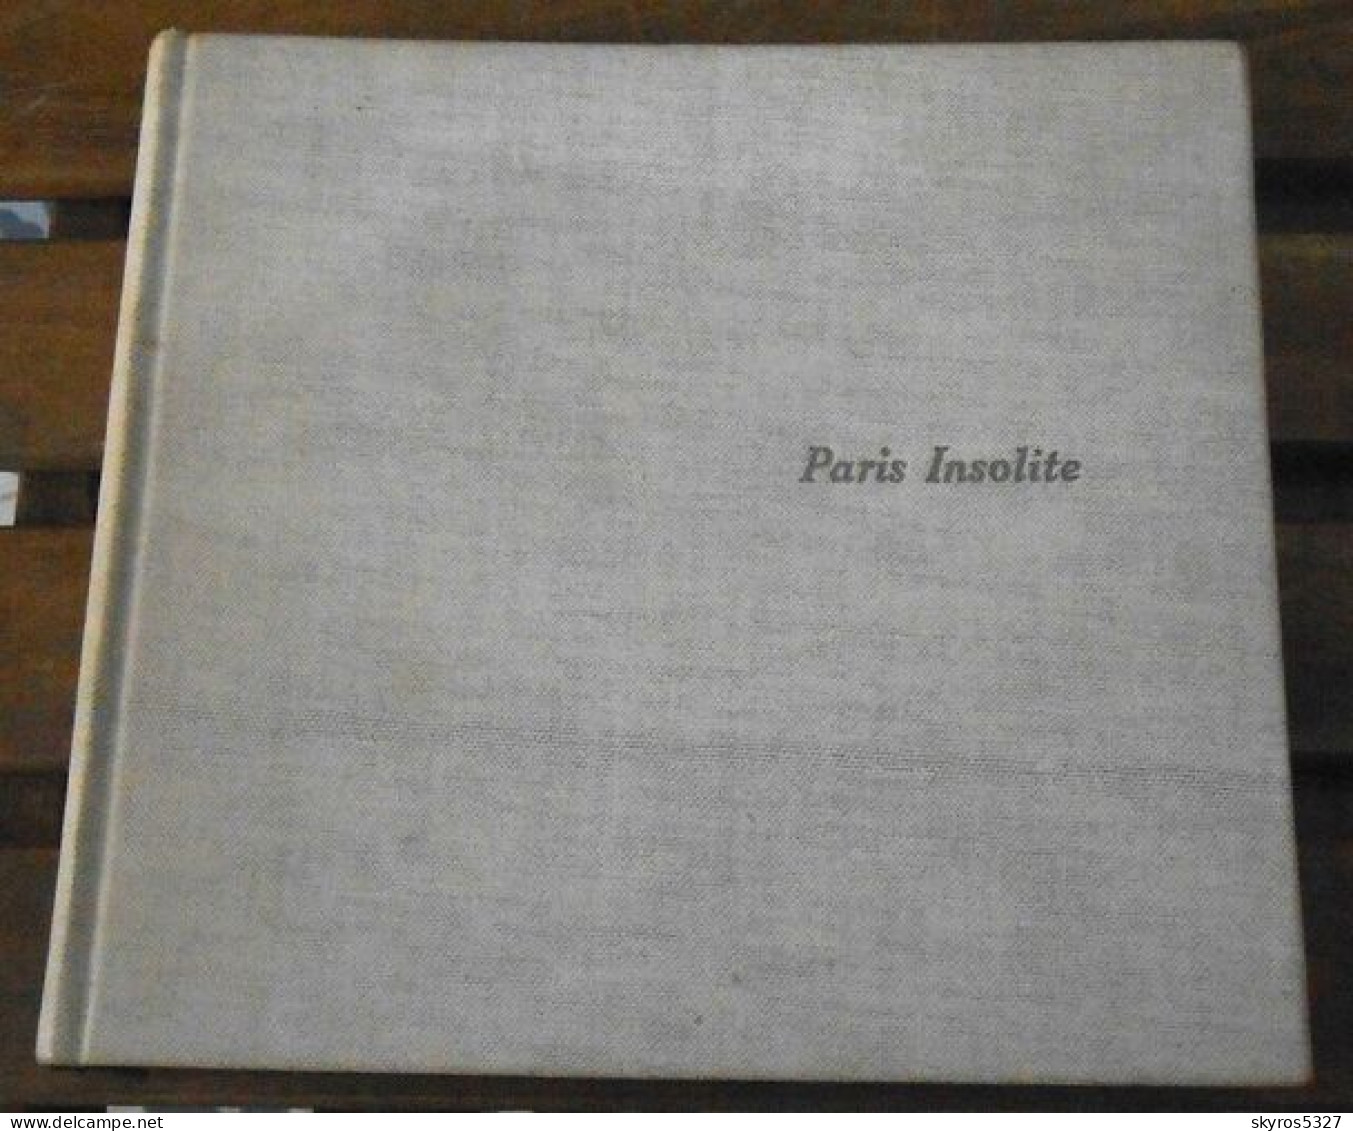 Paris Insolite - Parijs